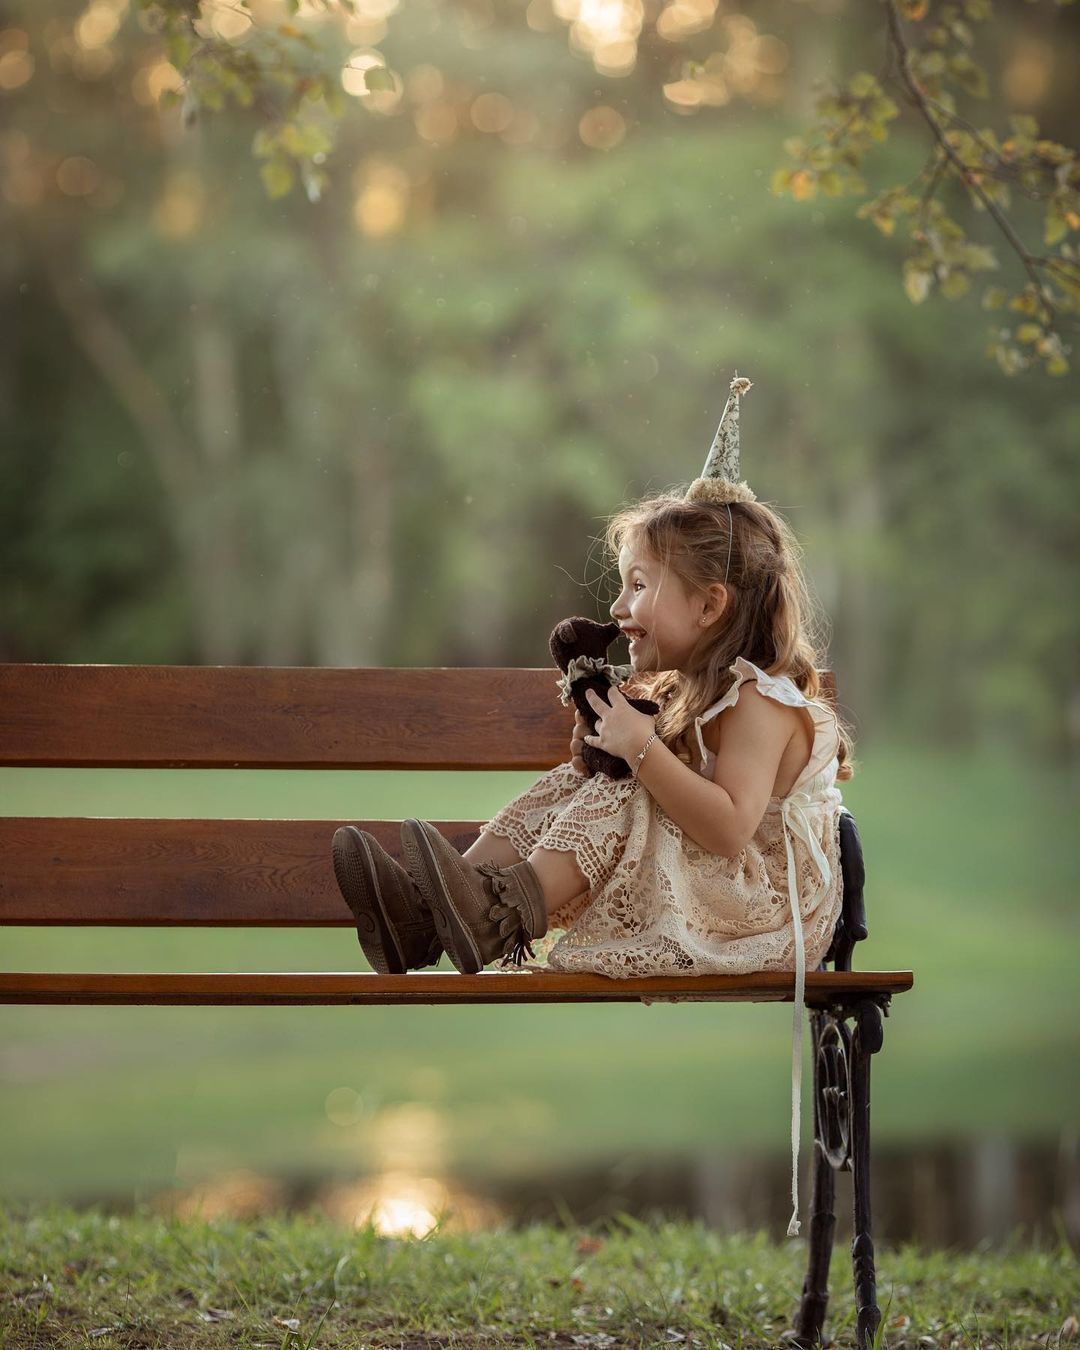 Красивые снимки детей от Марии дель Валле Прессер